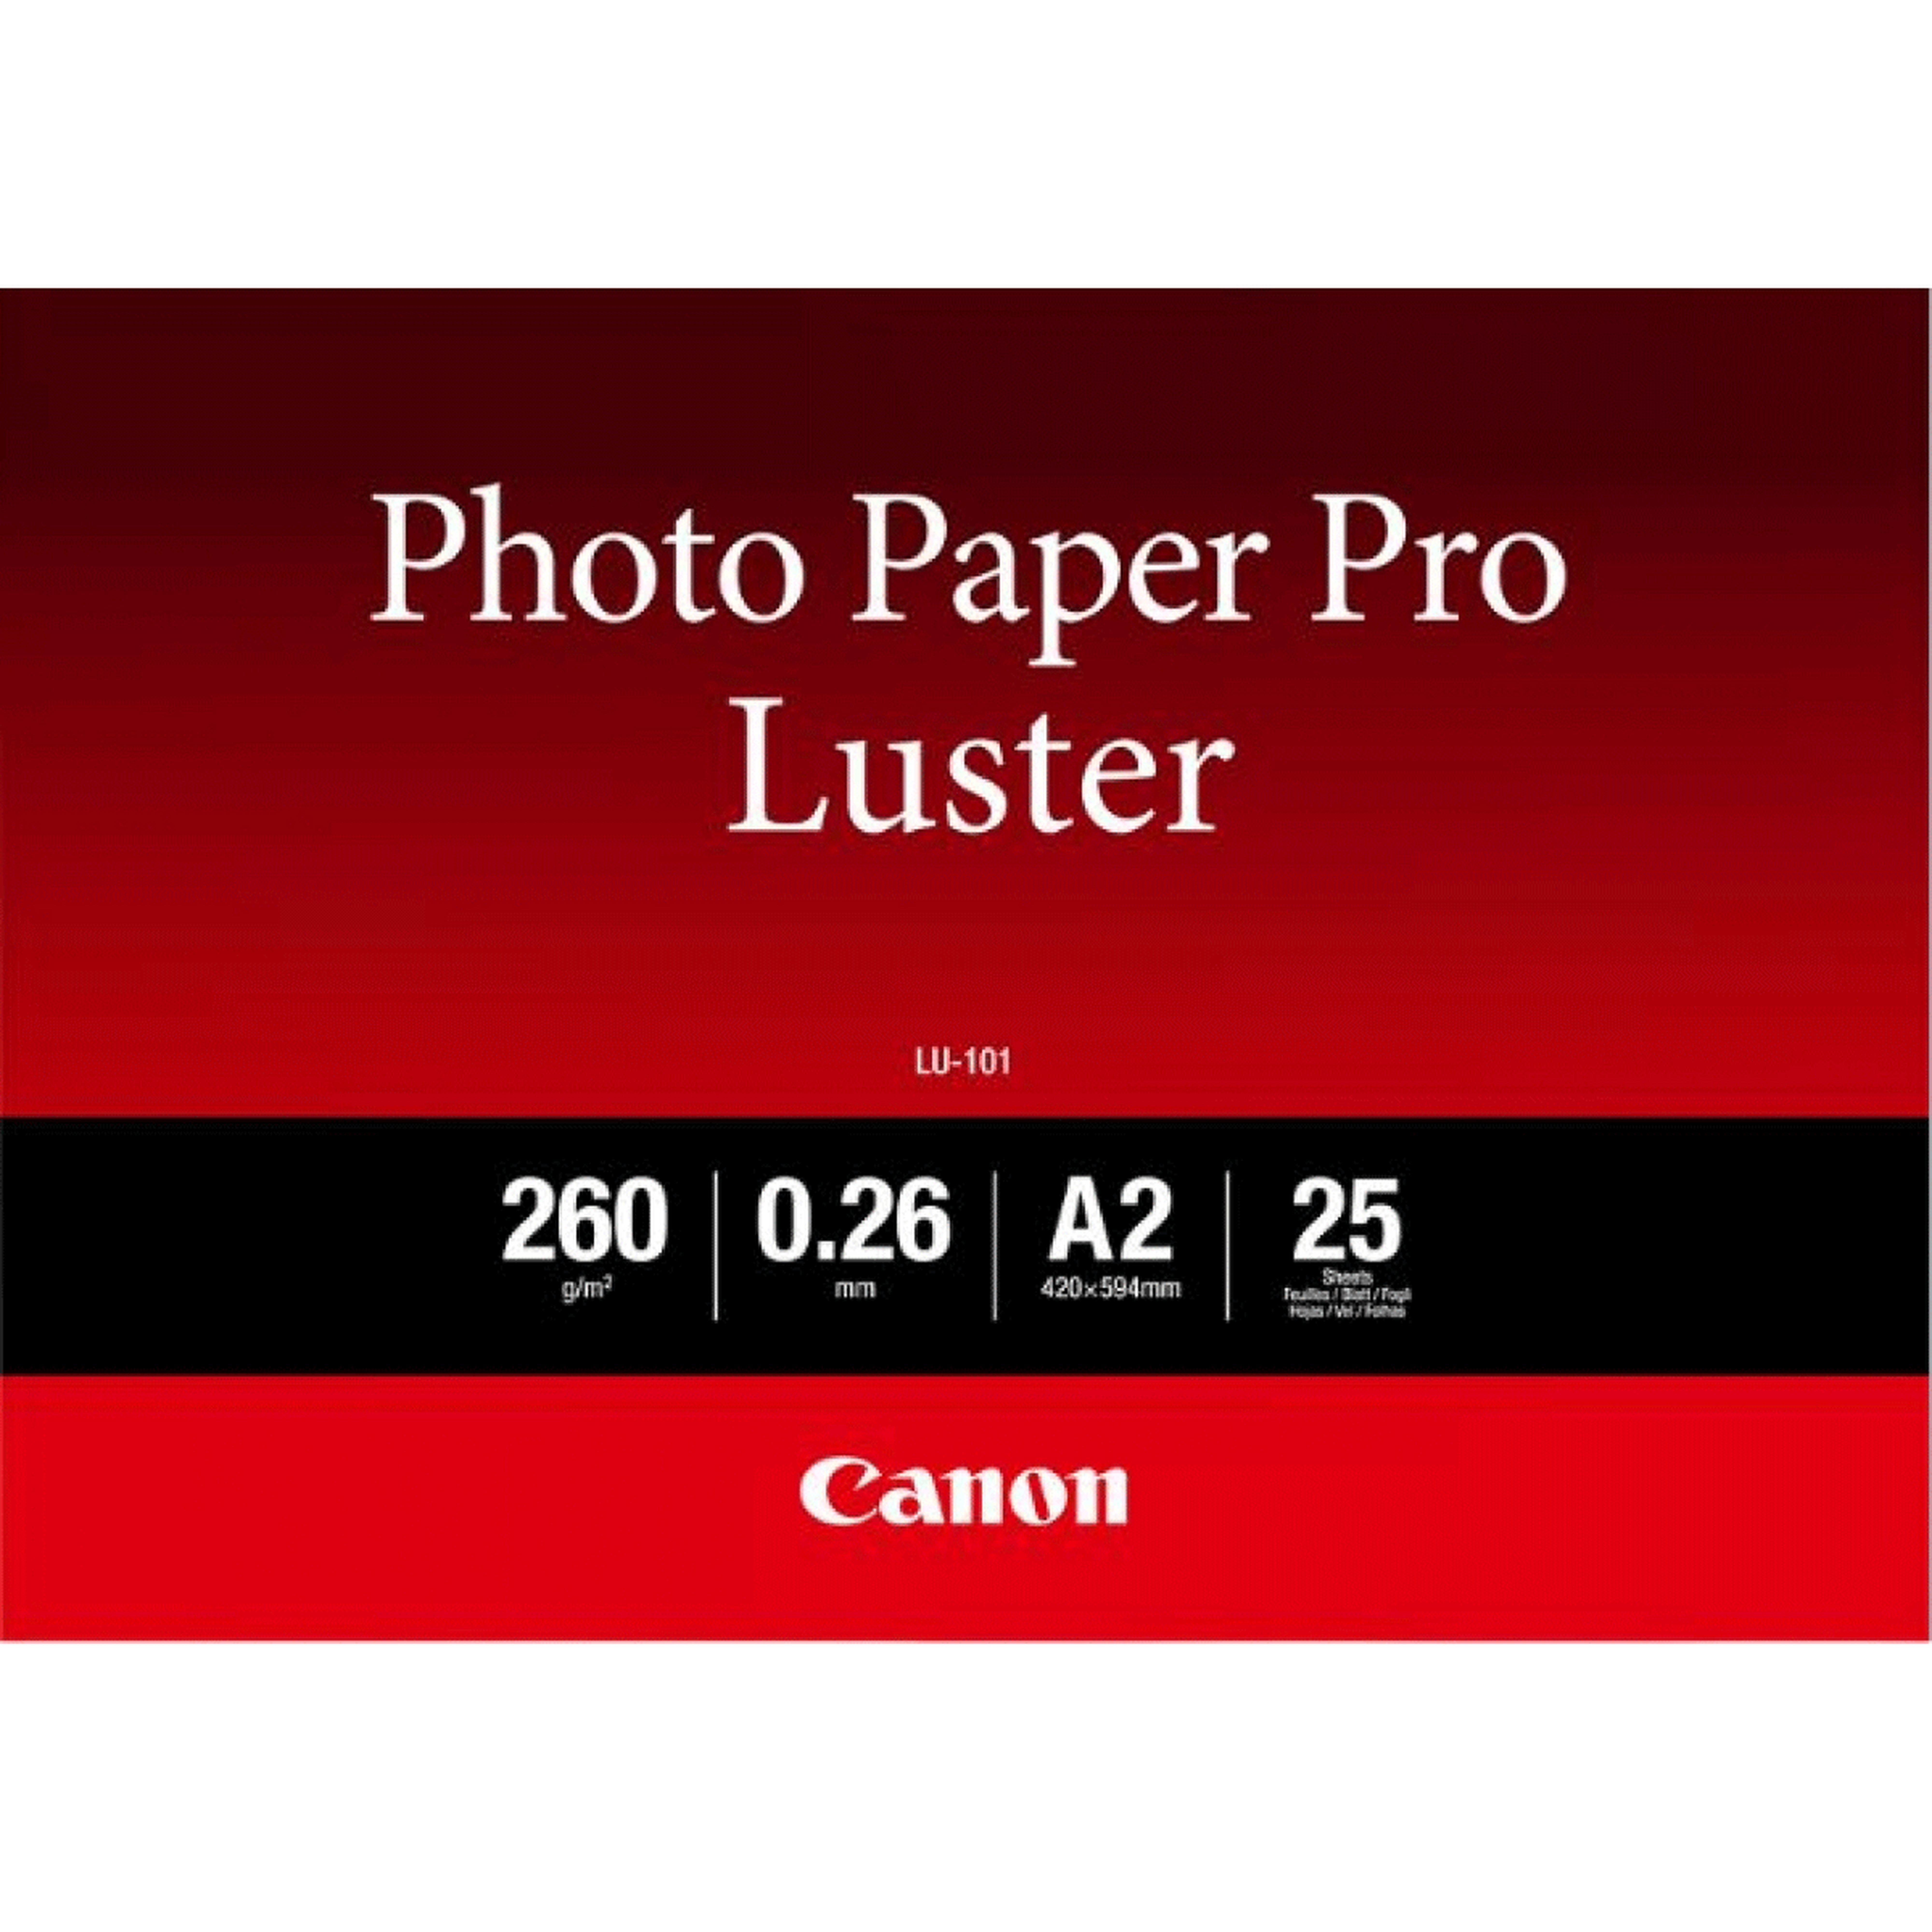 Canon LU-101 A2 Photo Carta Pro Luster 260g,R 25 Fogli 6211b026 - Foto 1 di 1